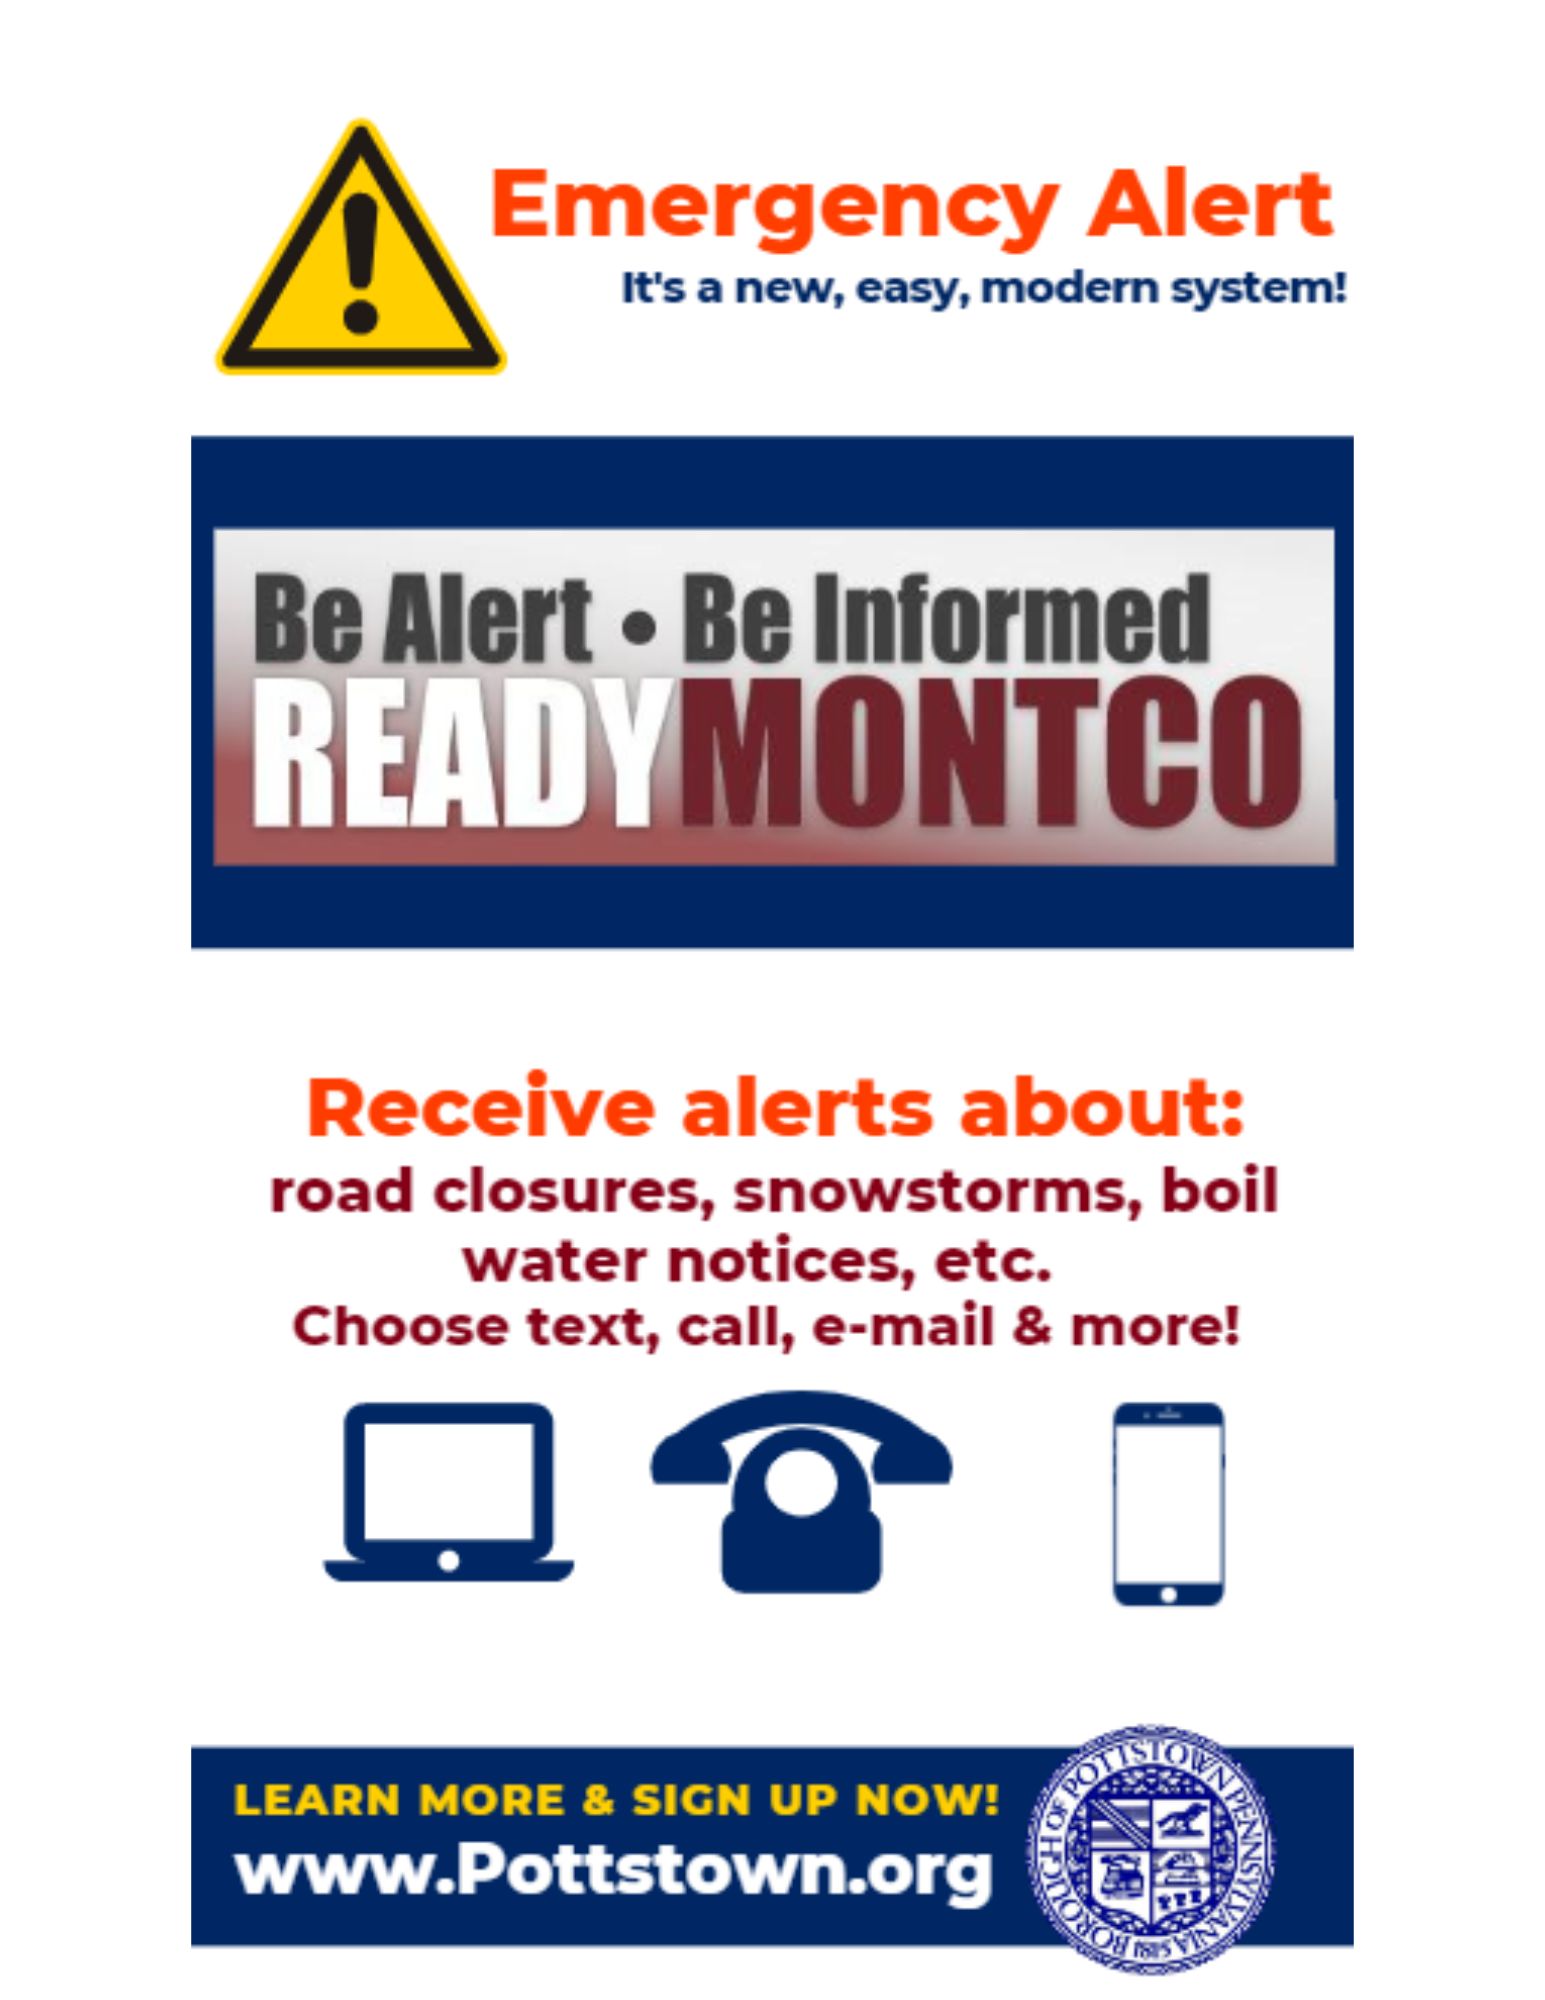 New Emergency Alert System in Pottstown